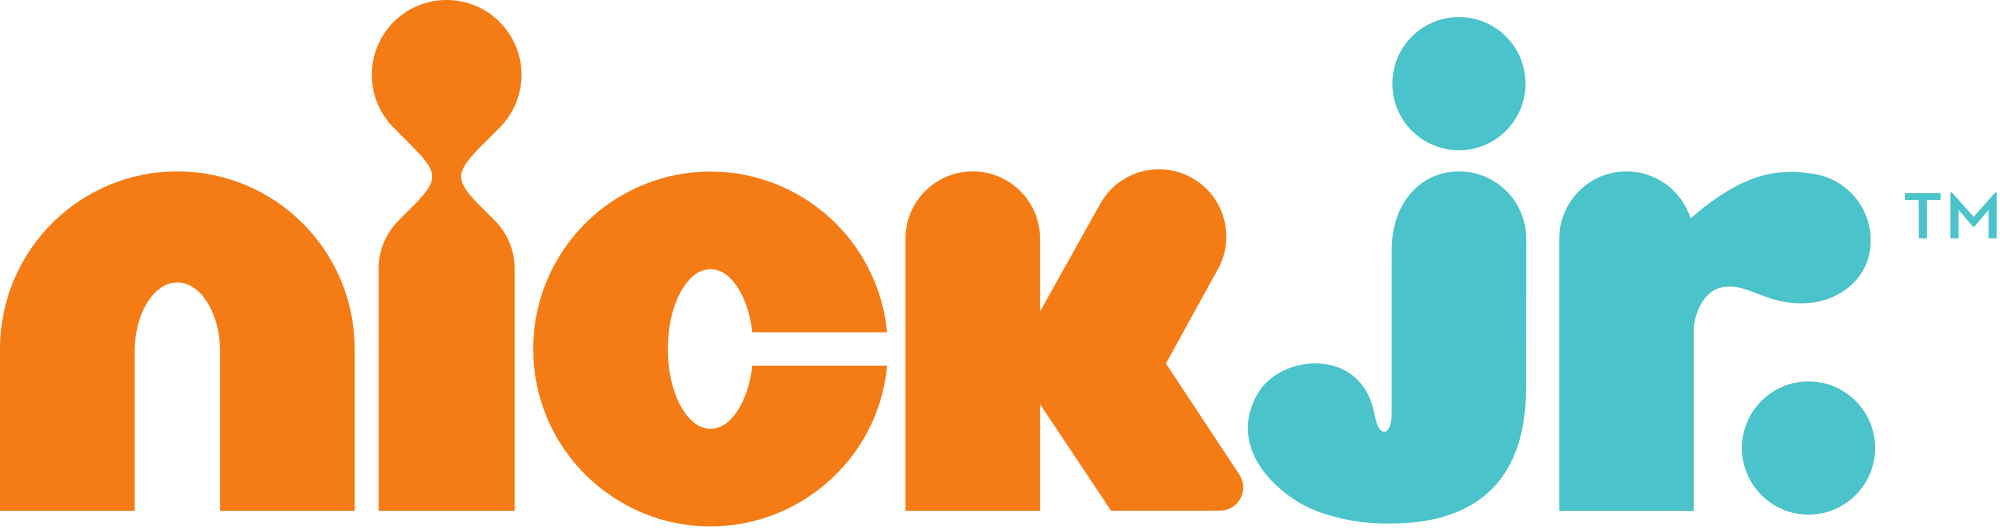 Nick_Jr.logo.png